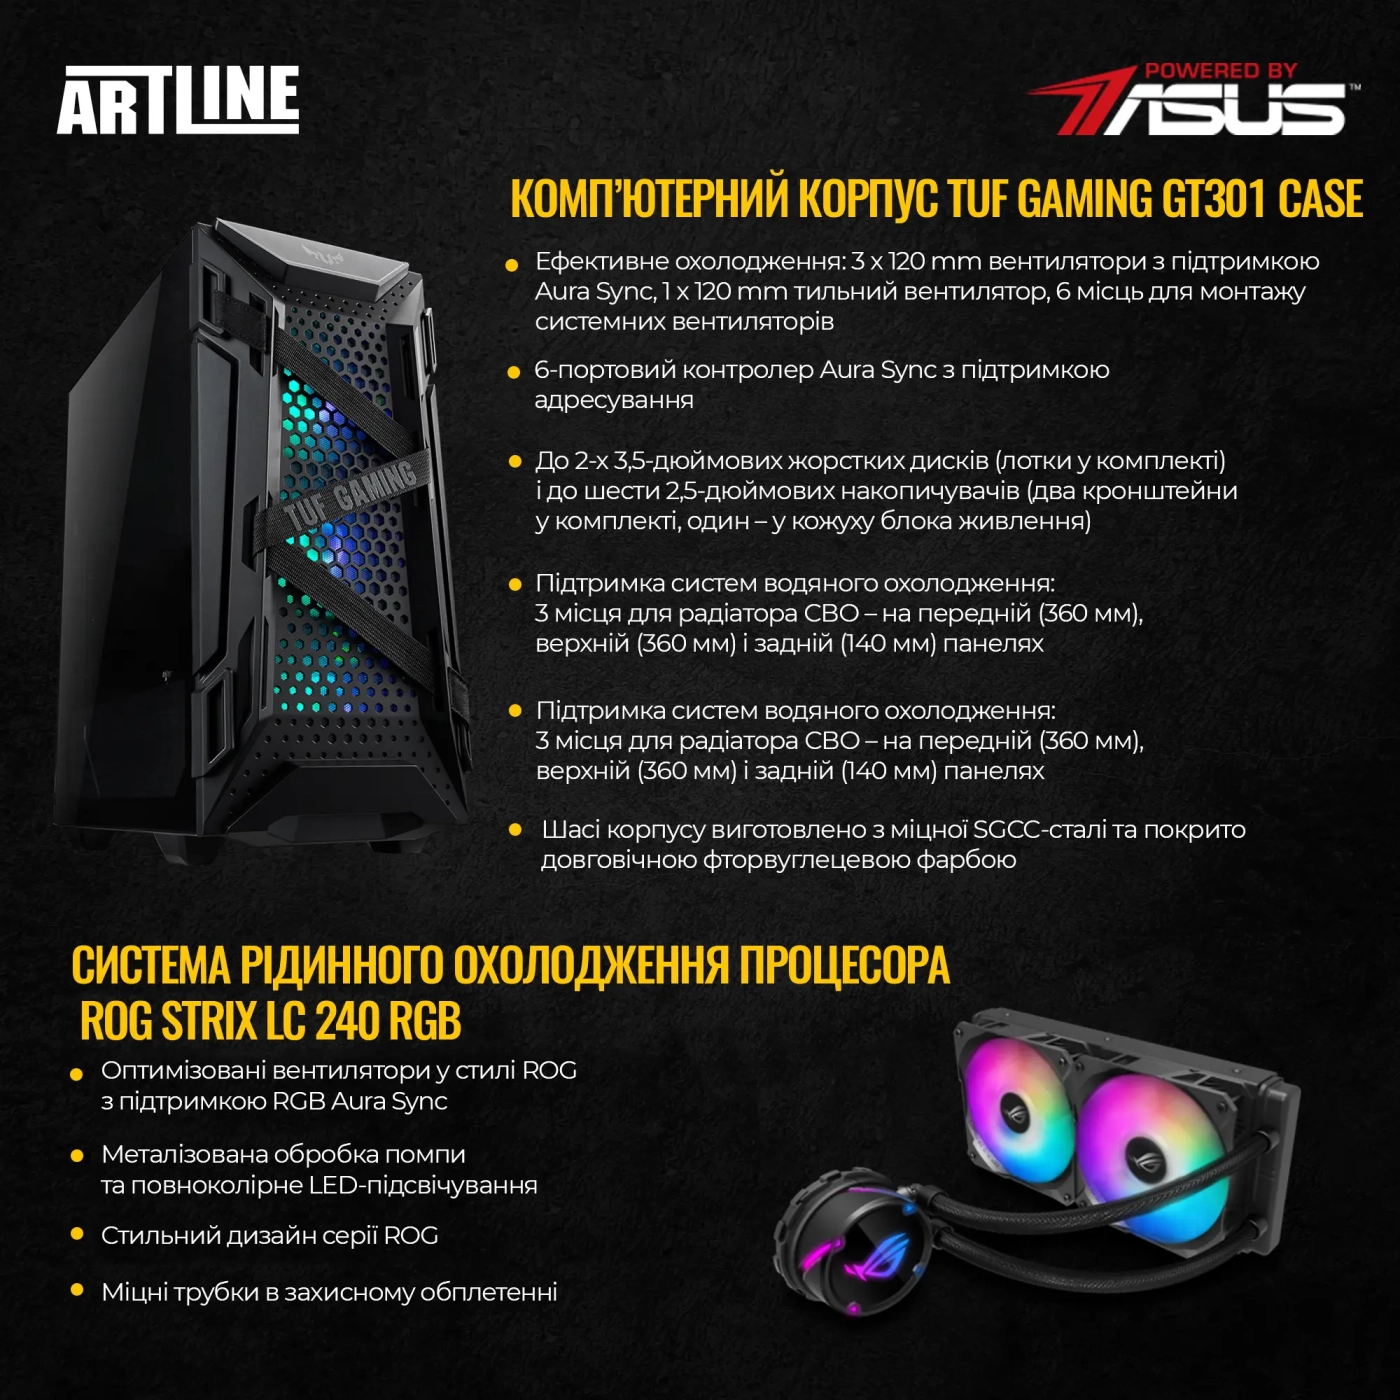 Купить Компьютер ARTLINE Gaming GT301v10 - фото 2